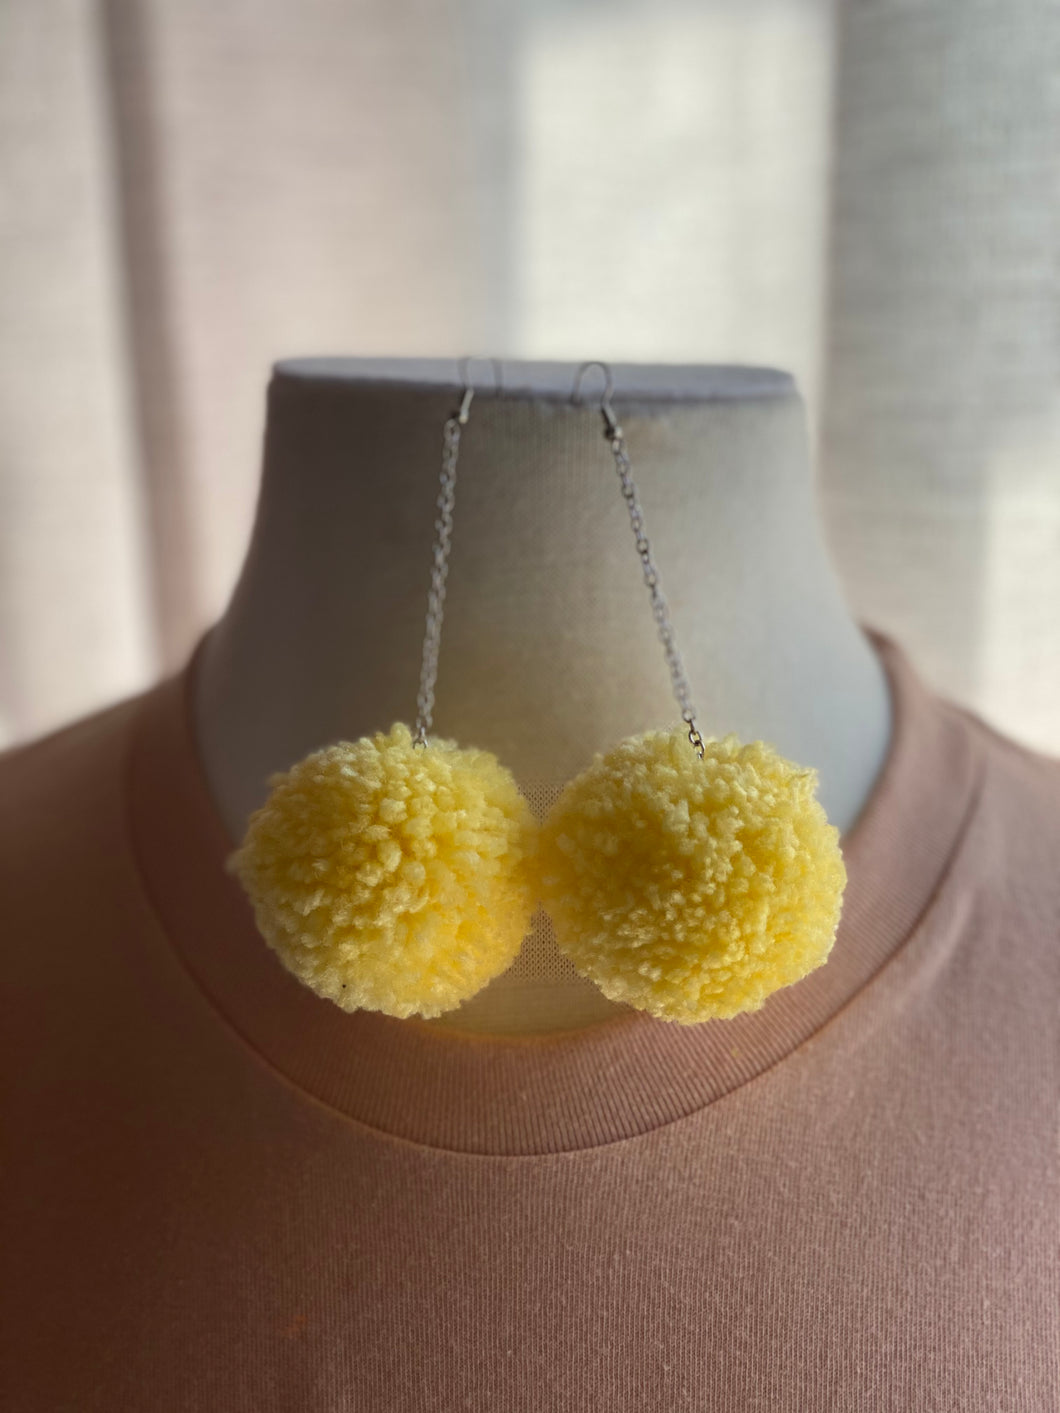 Yellow Pom Pom Earrings